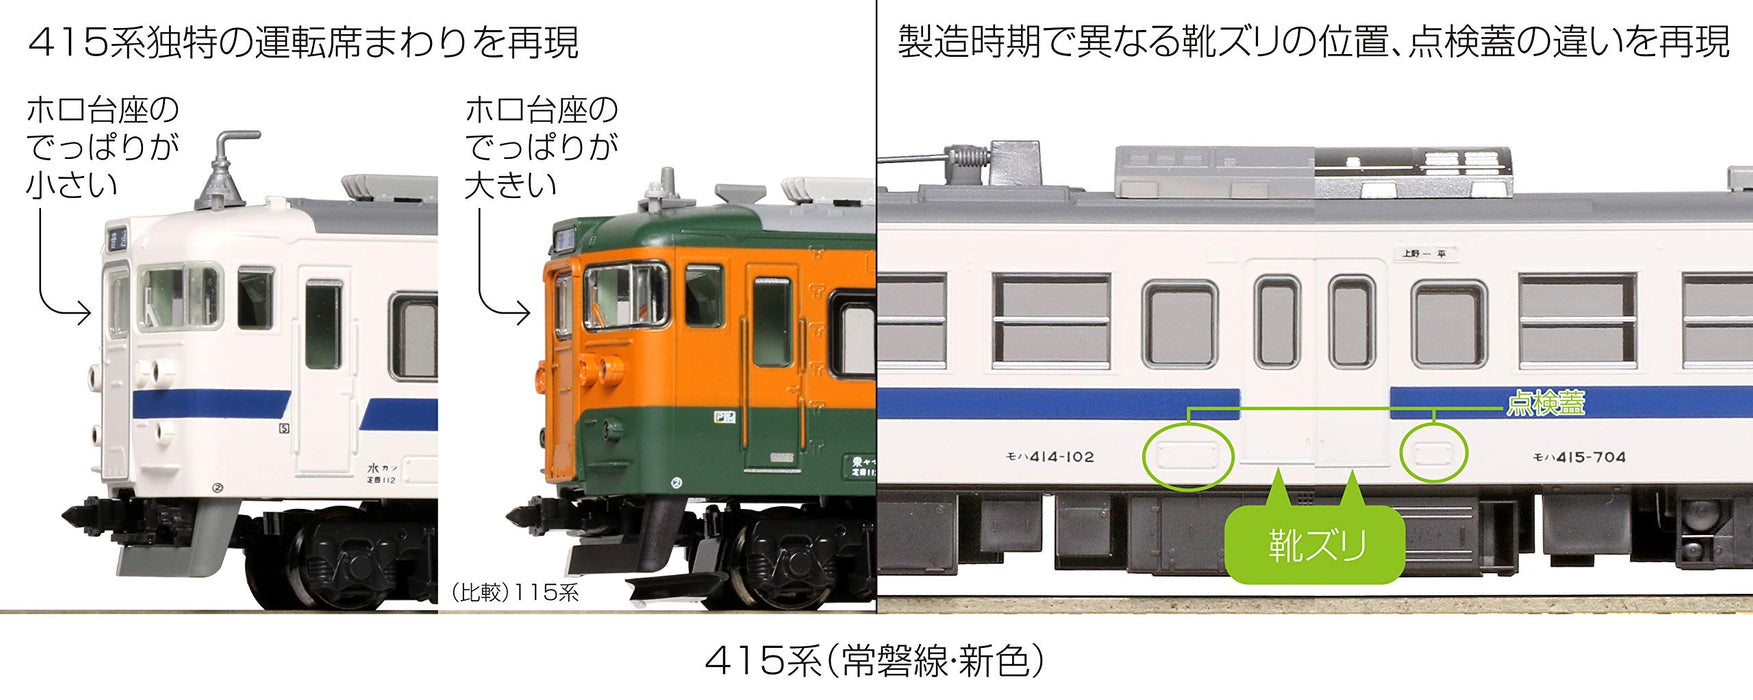 Kato N Spur 415 Serie Eisenbahn-Modellzug - Joban Line Neue Farbe 7-Wagen-Set